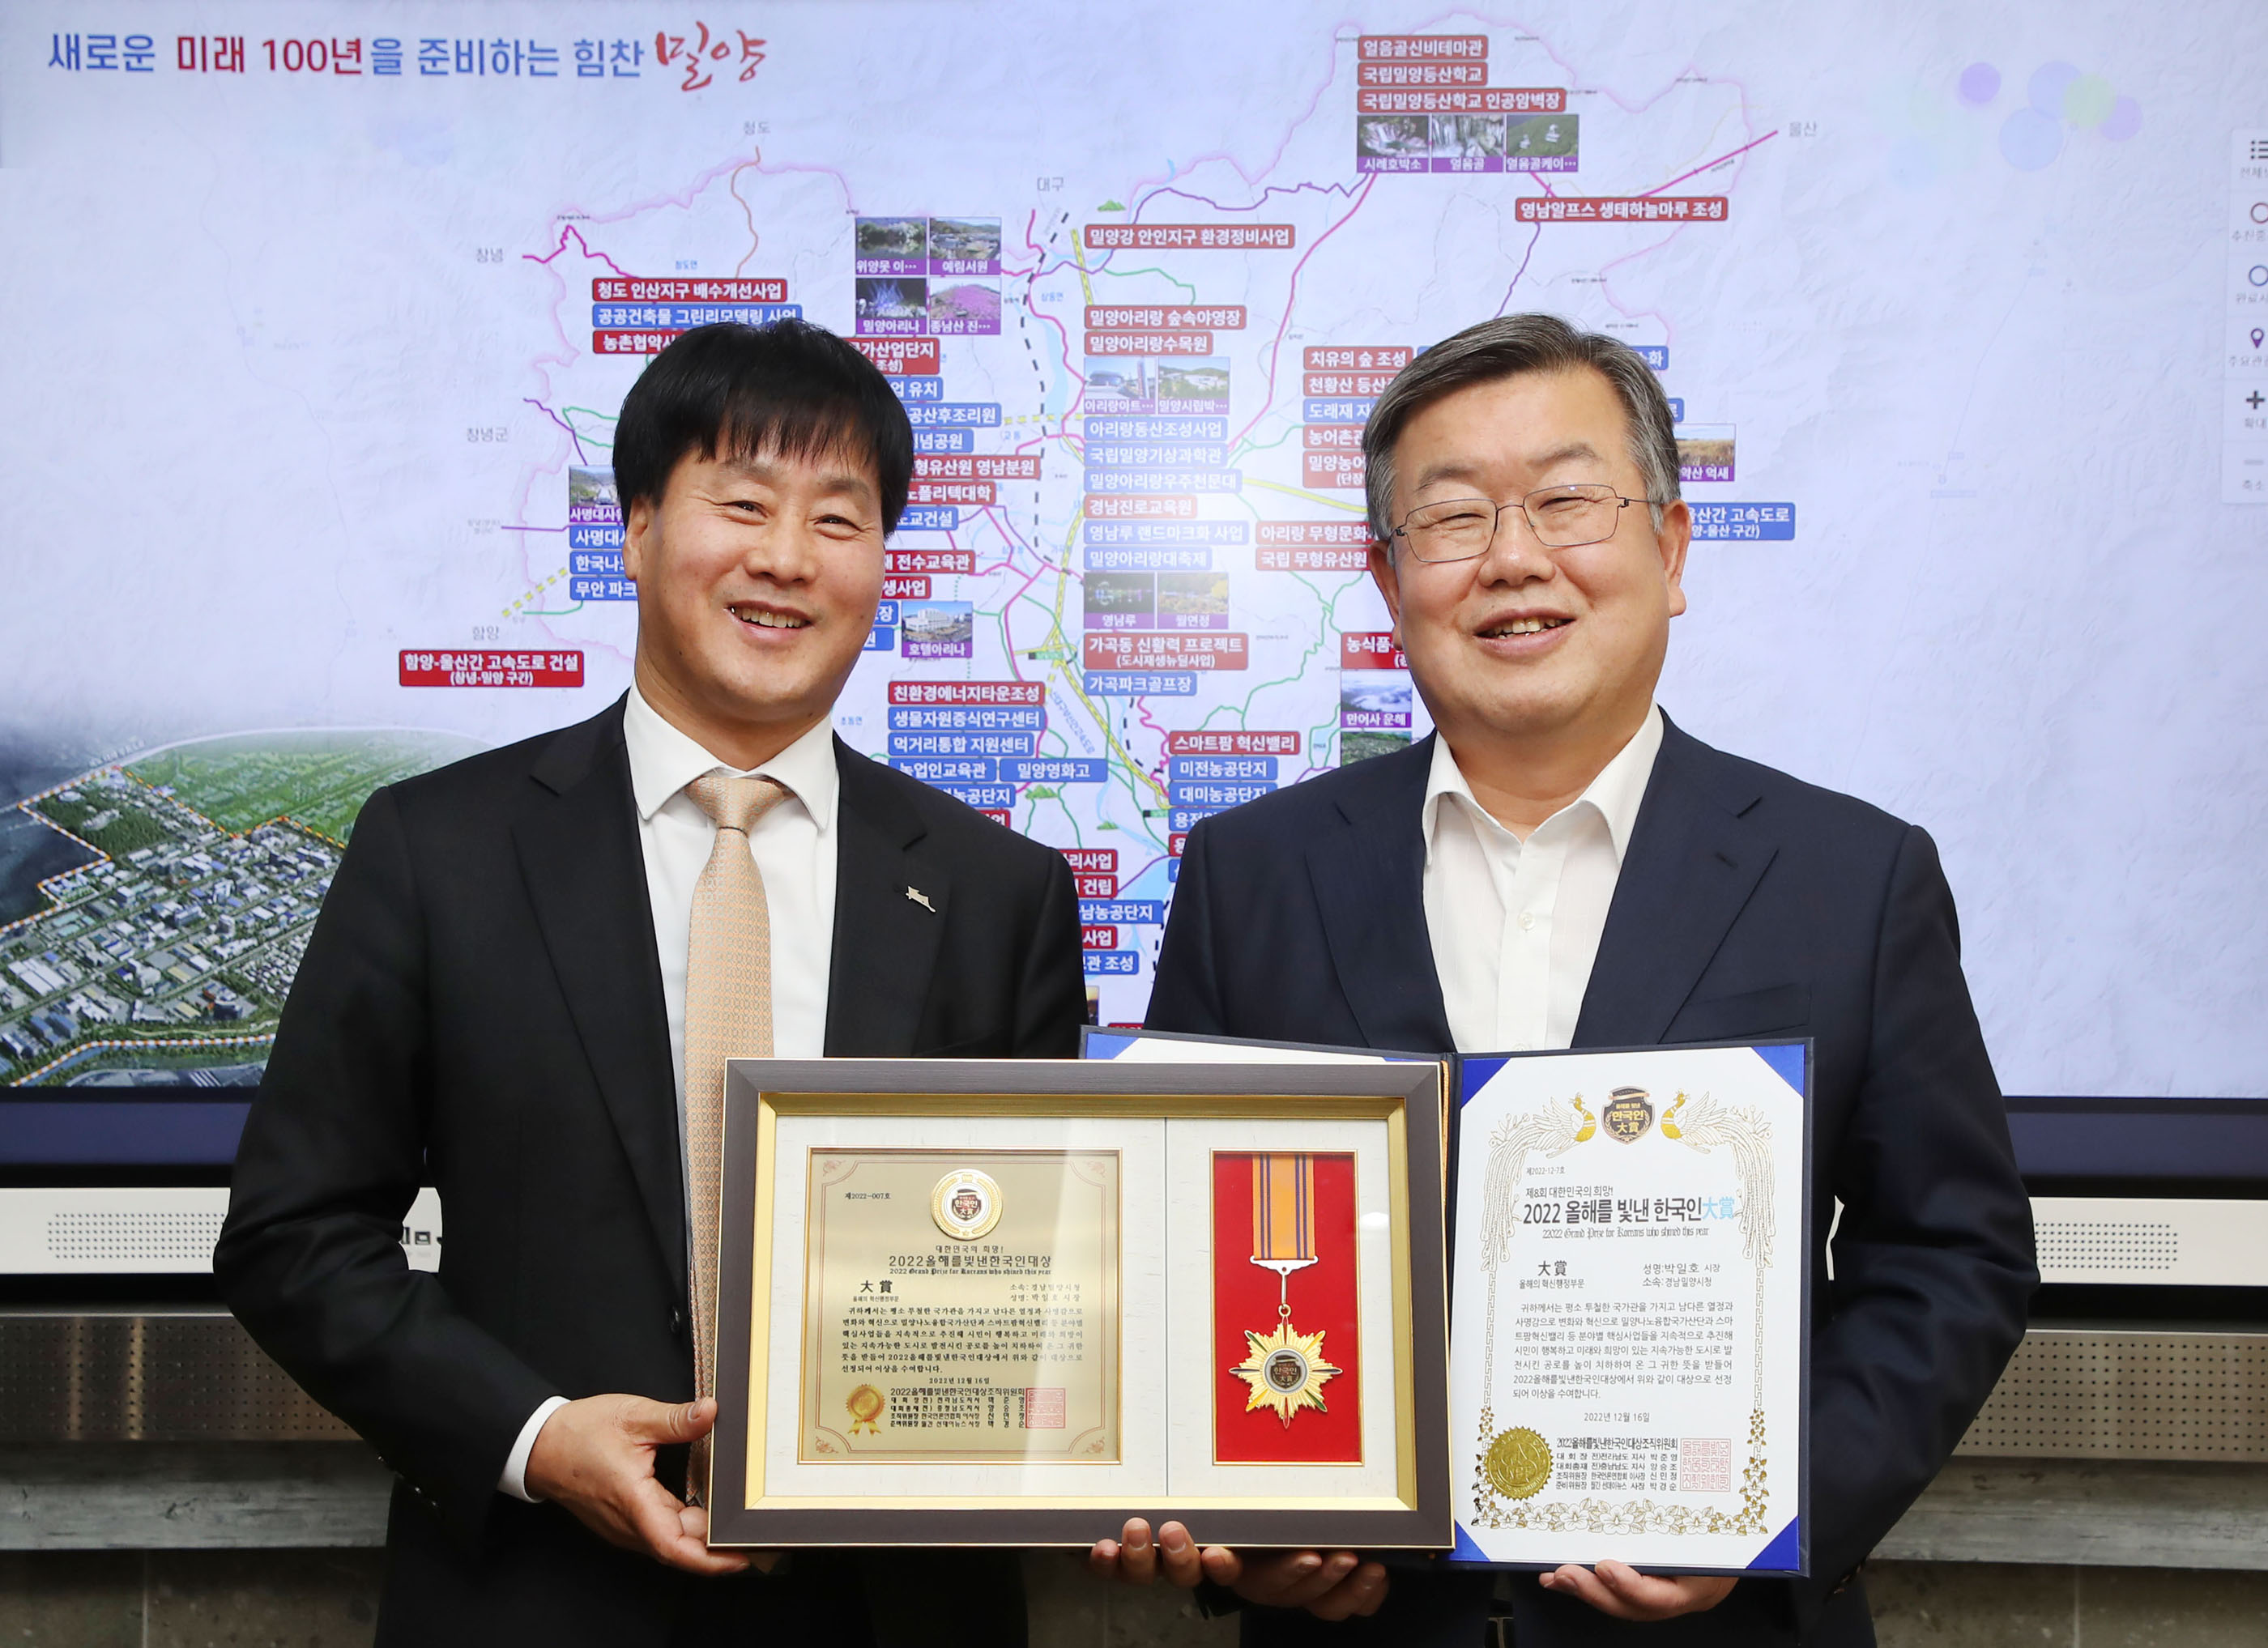 20230201-박일호 밀양시장  2022 올해를 빛낸 한국인 대상 수상(1).jpg